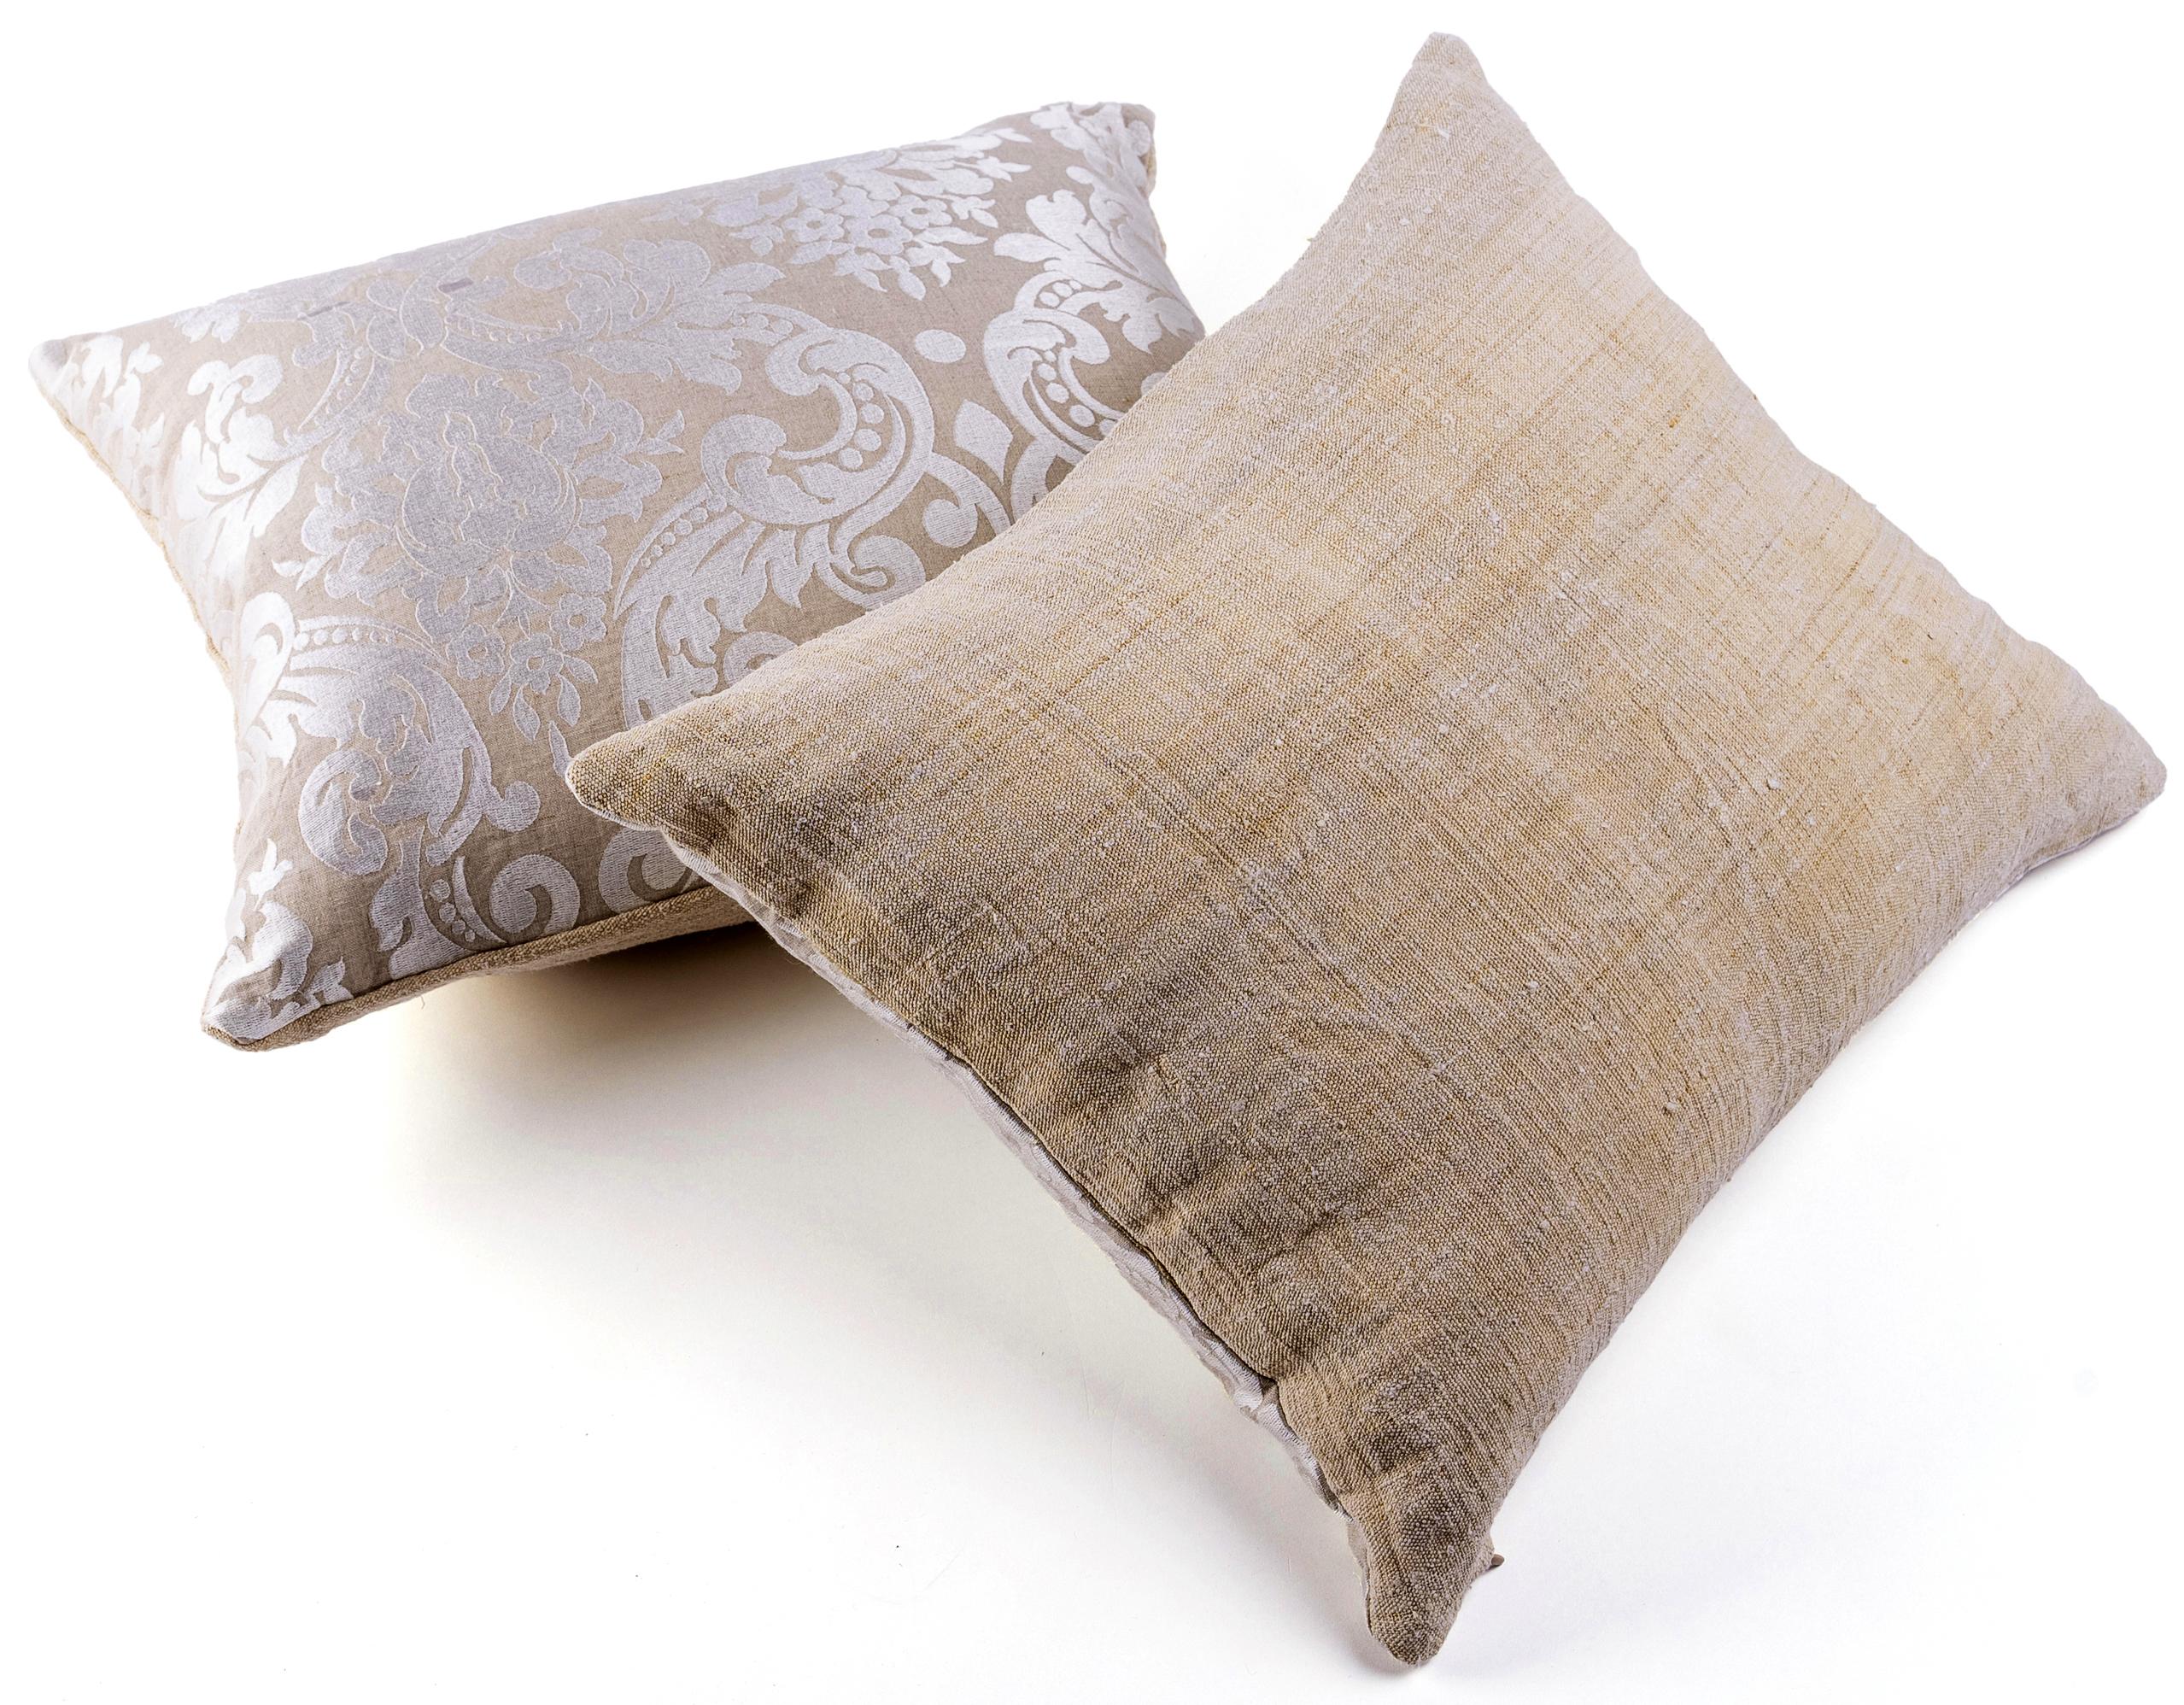 Cette paire de coussins est fabriquée à partir de morceaux récupérés d'un drap ancien, rustique, en tissu de chanvre lourd (19e siècle France) sur un côté. Ce tissu est filé et tissé à la main. L'autre face est réalisée dans un lin beige sable